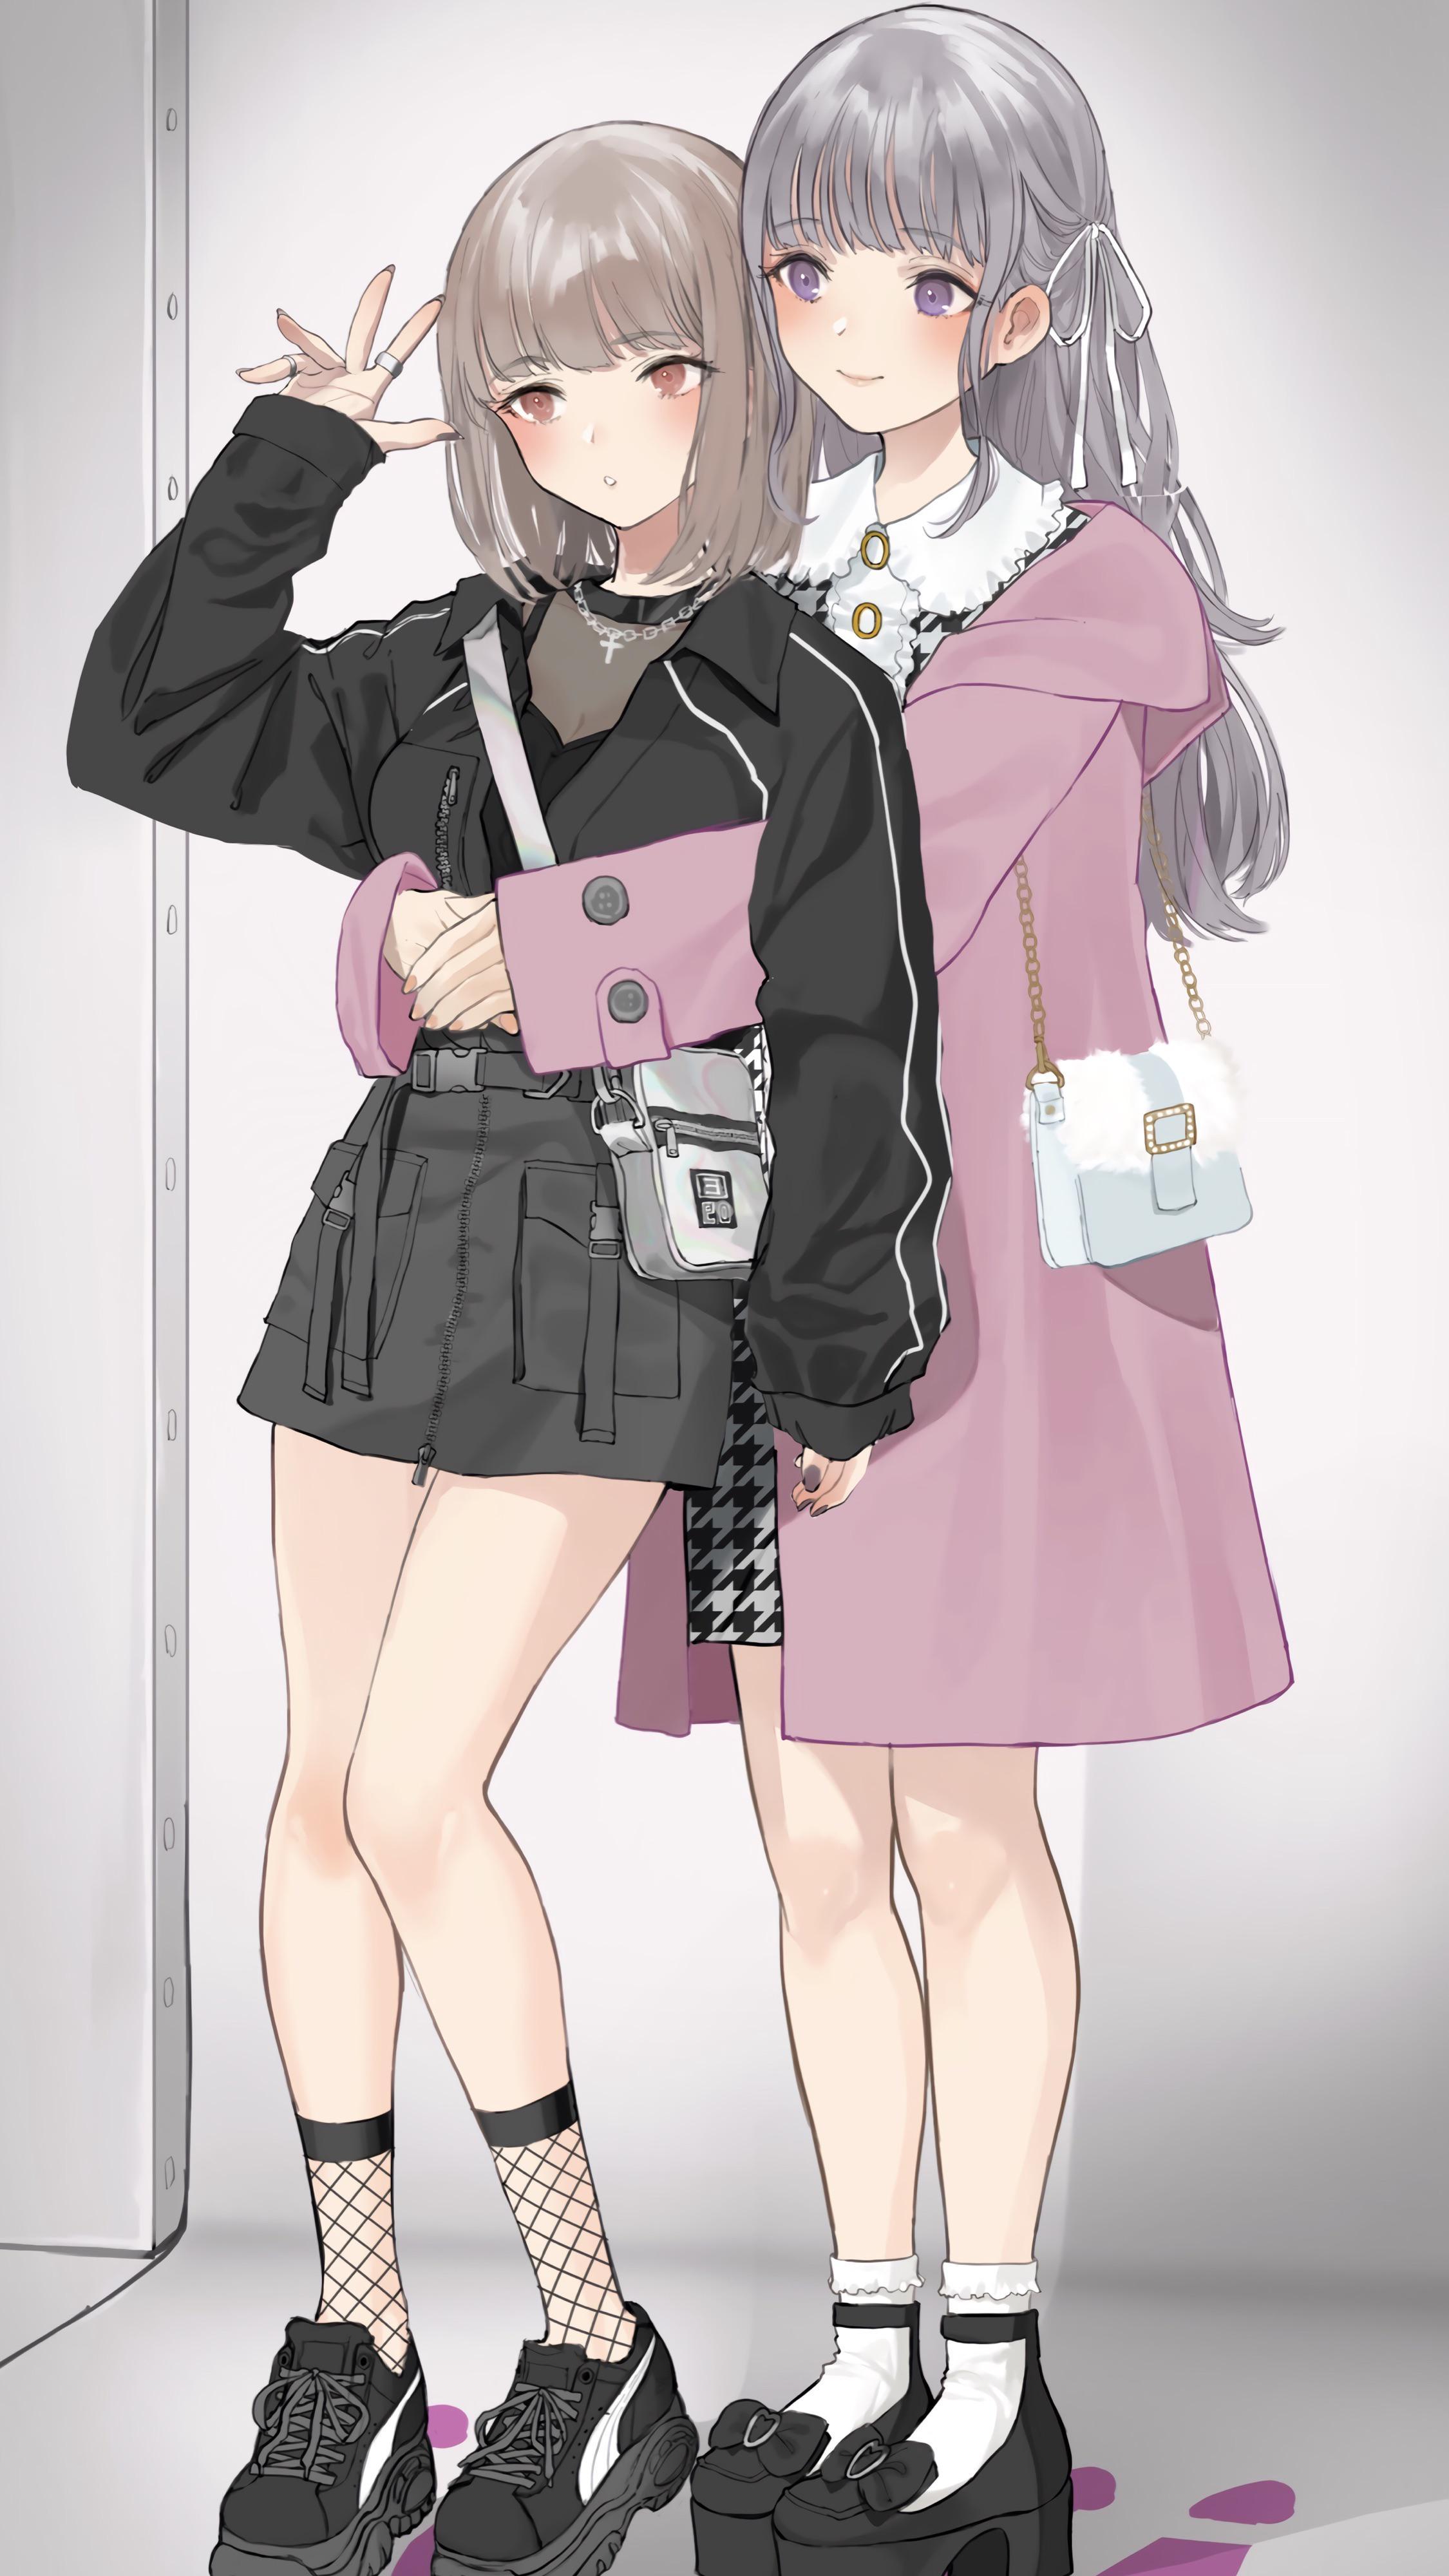 Bff Anime Girls by AnimeLoverAnnie on DeviantArt